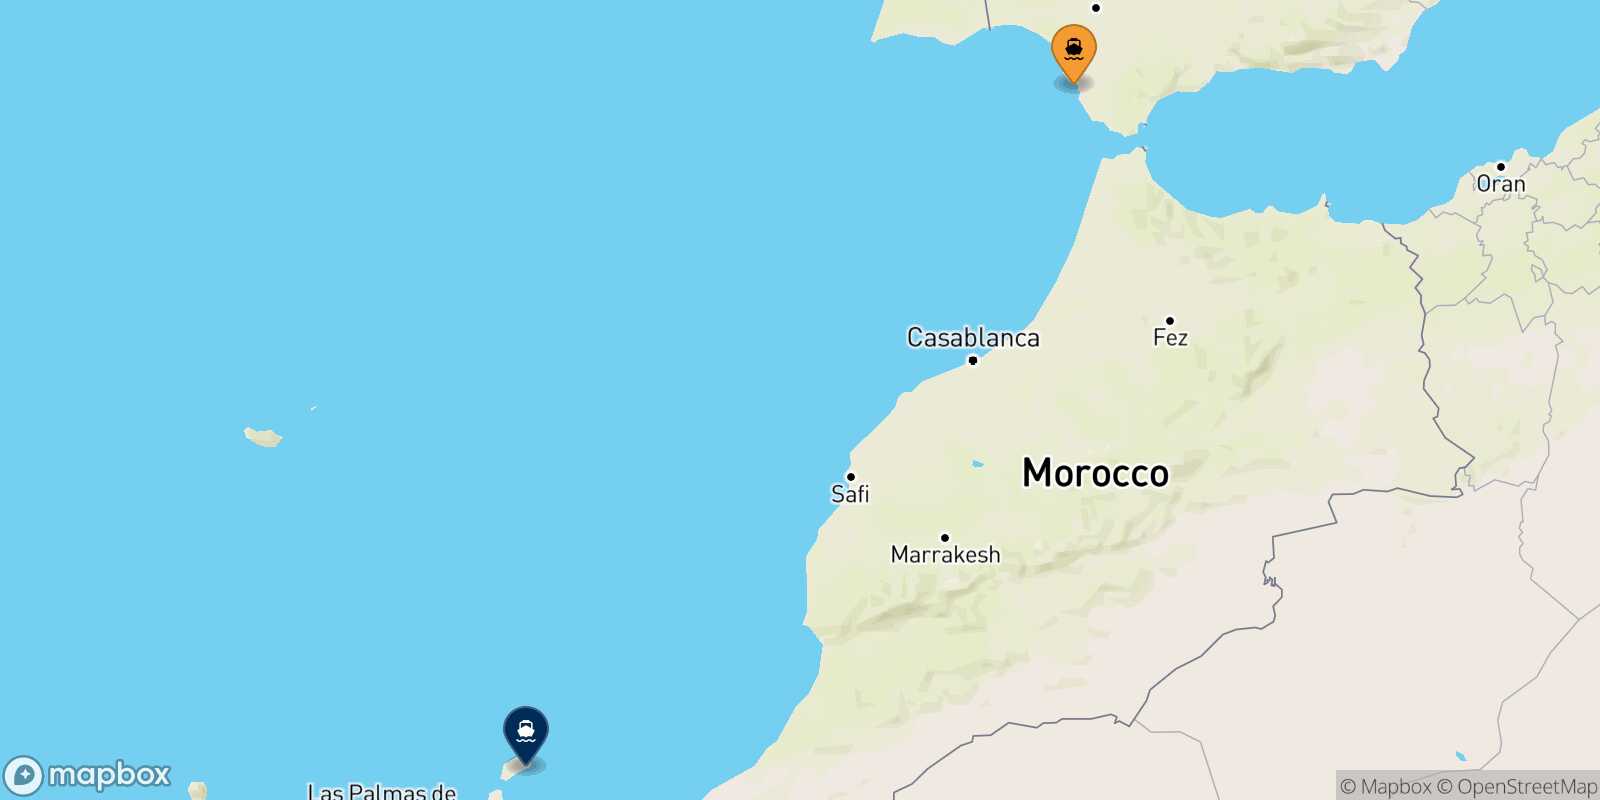 Cadiz Arrecife (Lanzarote) route map